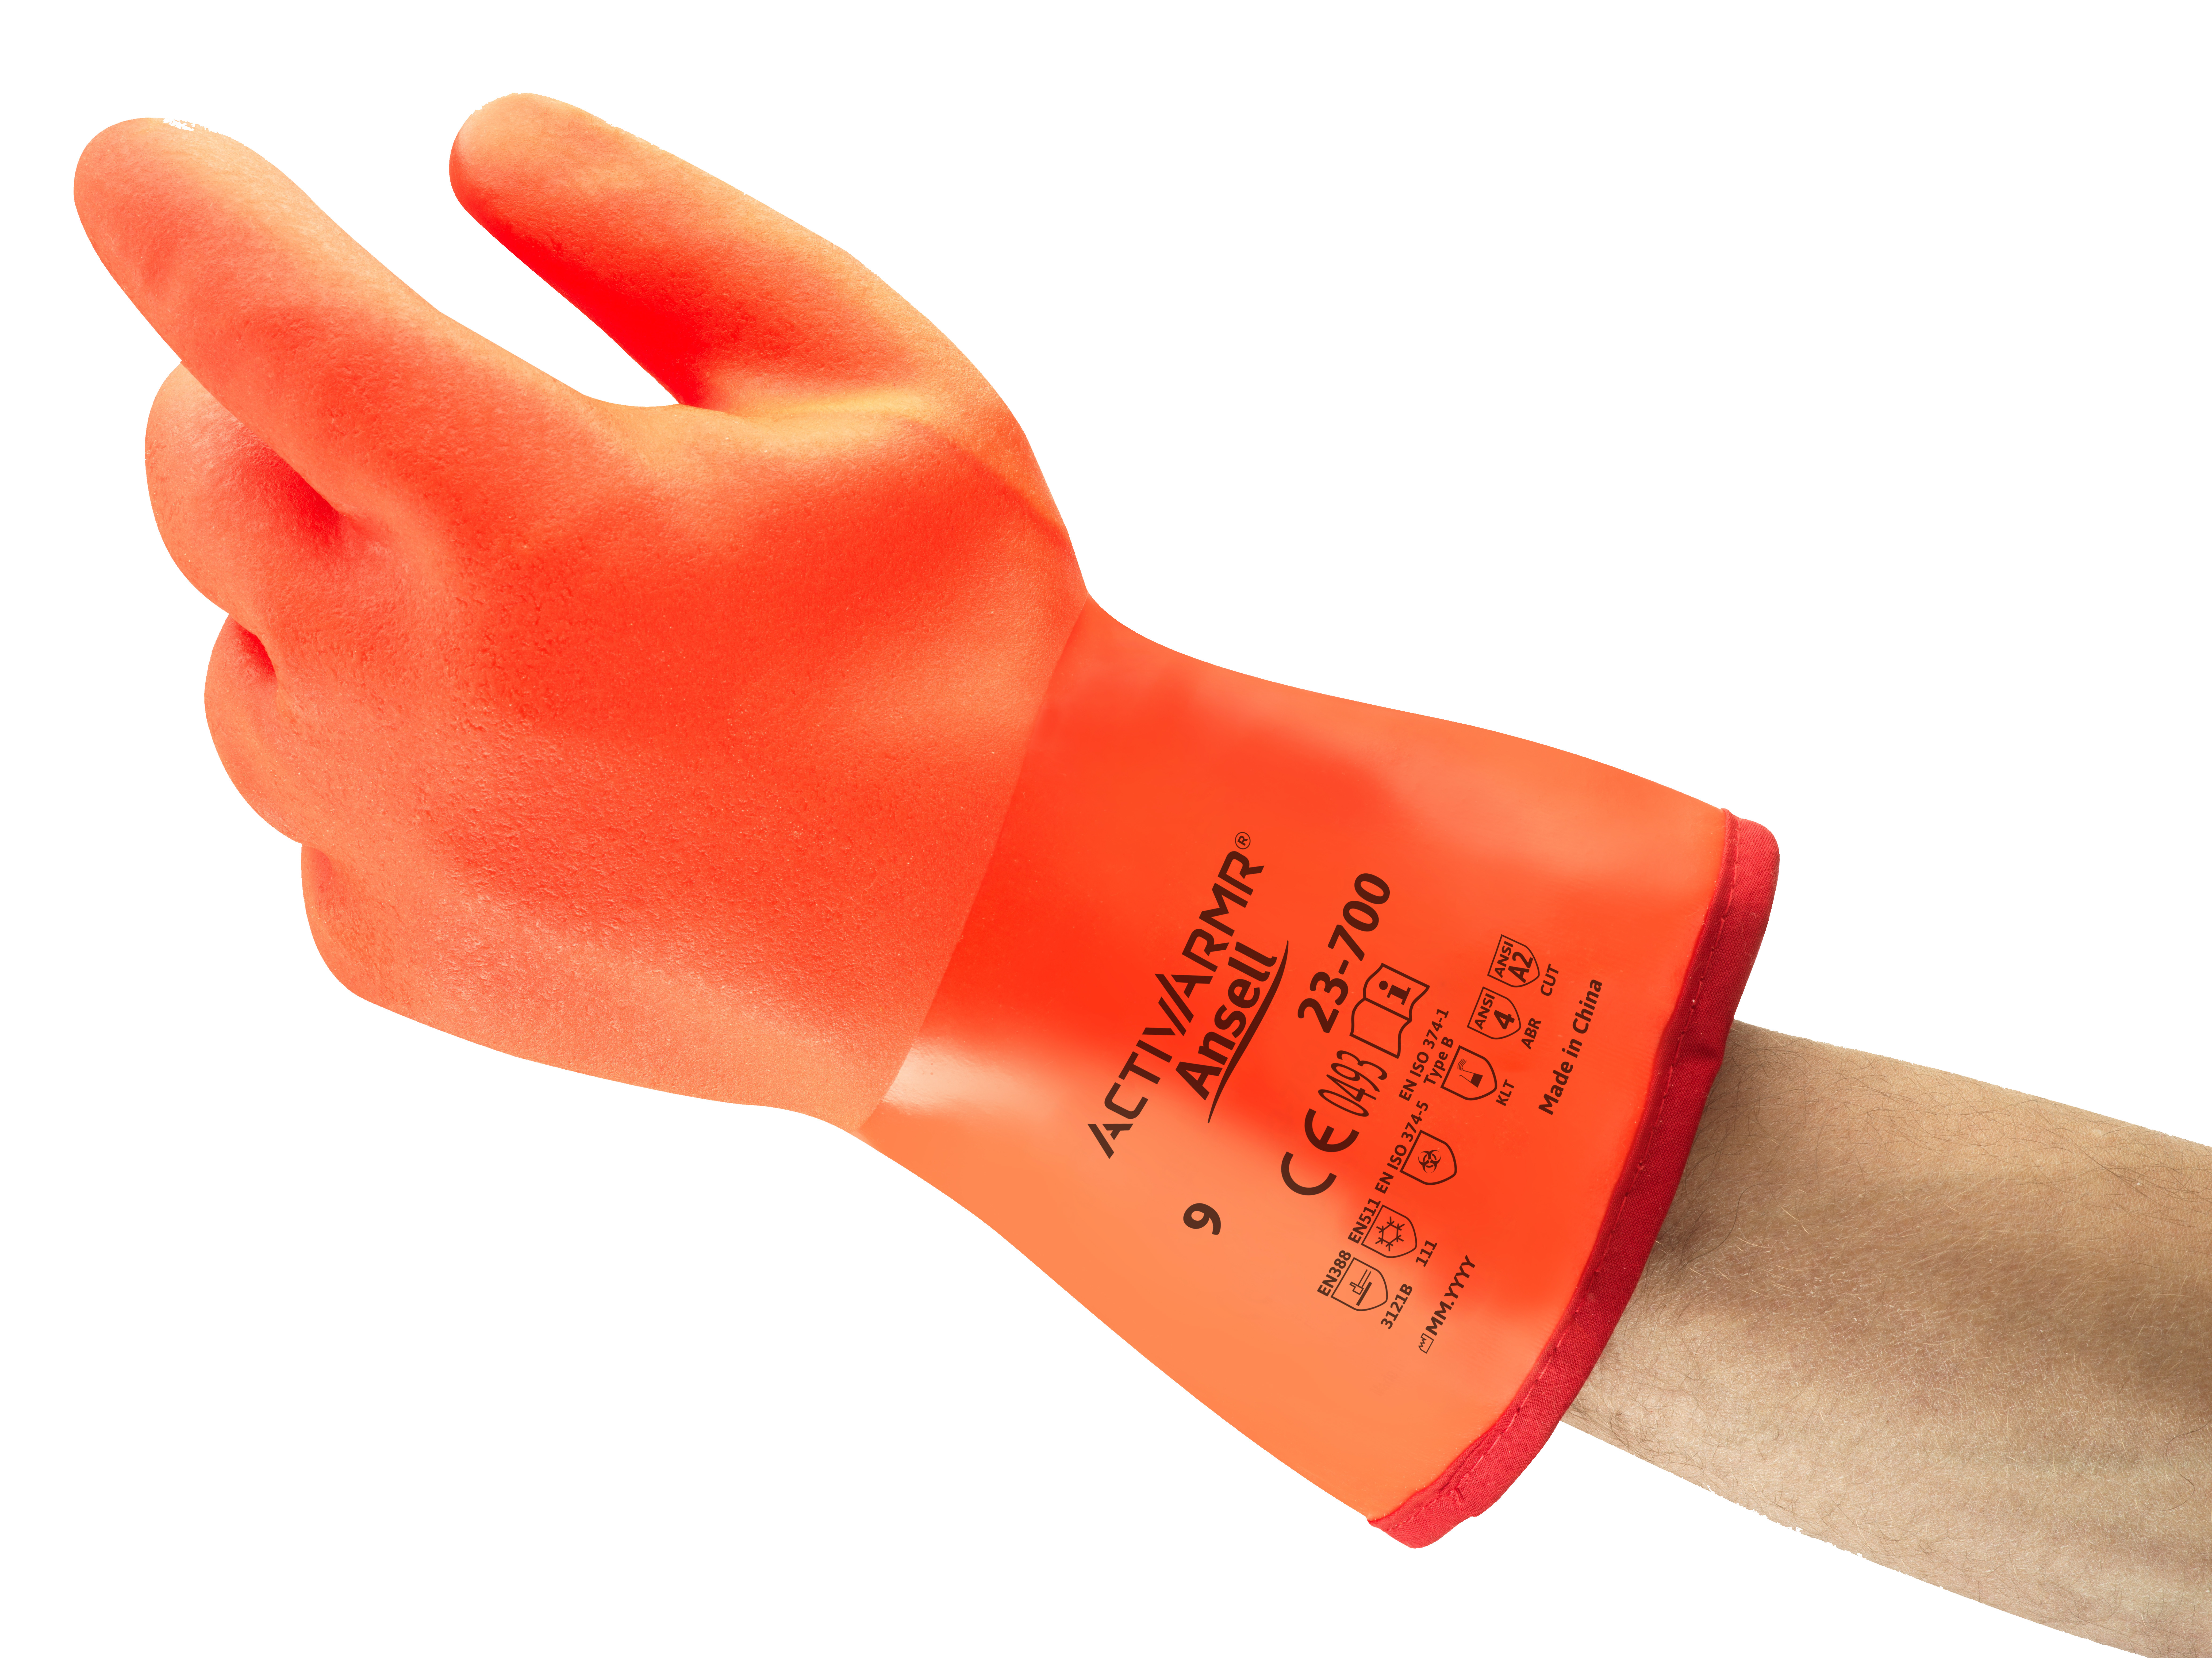 Ansell - Handschuh ActivArmr 23-700 (Polar Grip®)